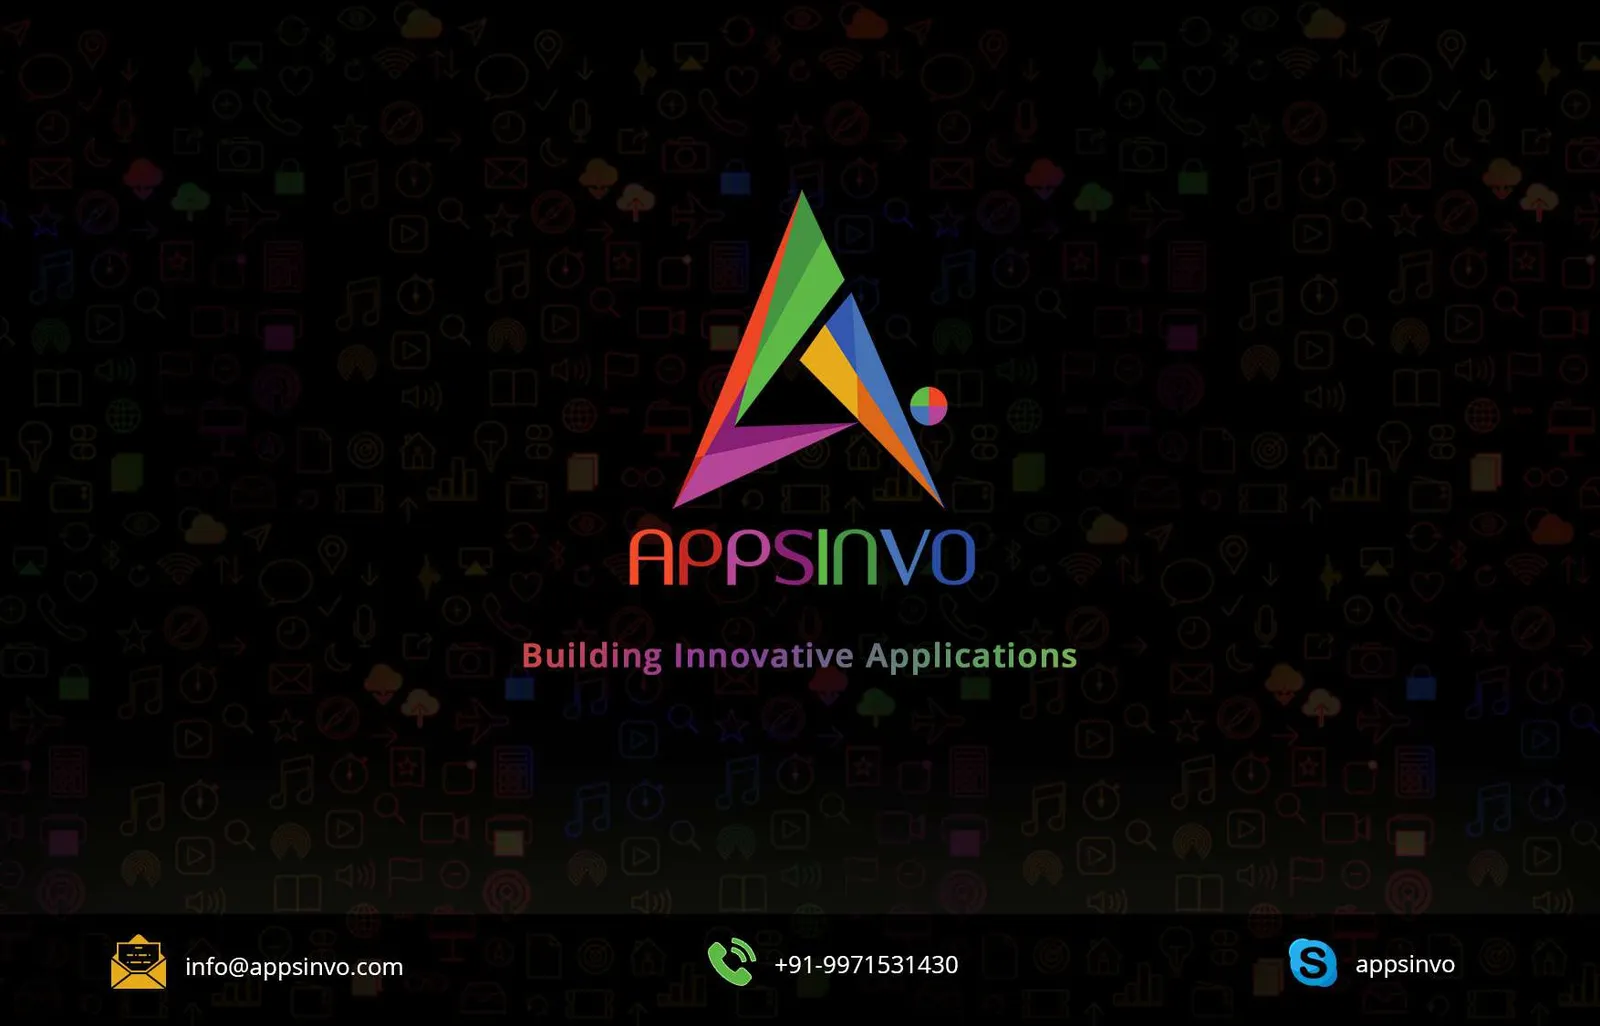 Appsinvo : SEO Services Company in India